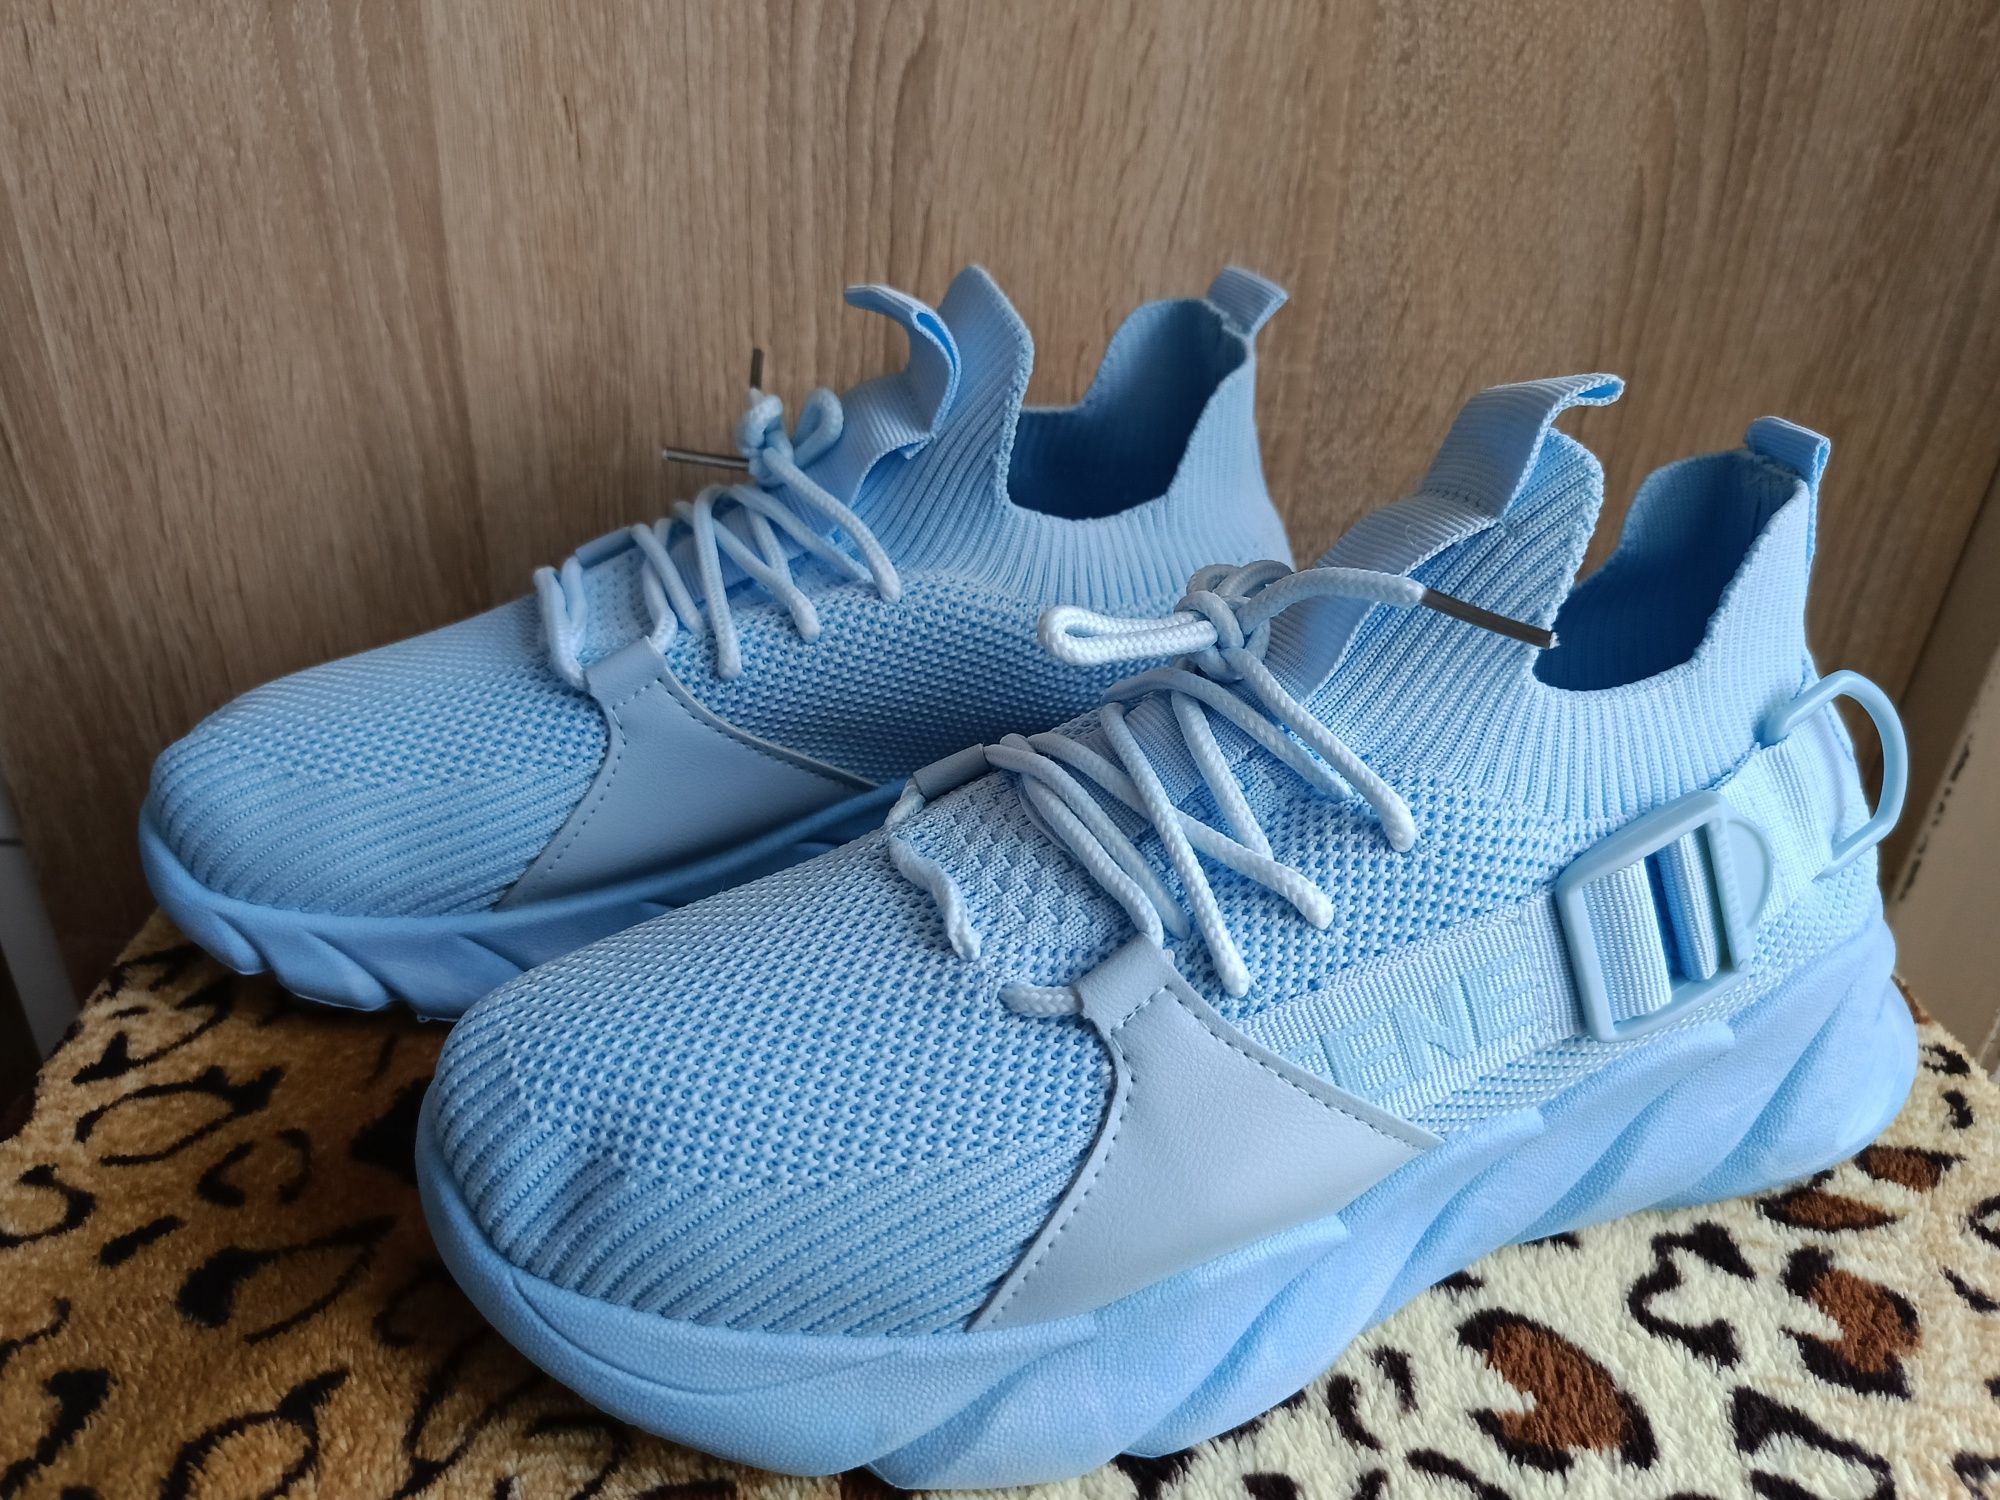 Nowe damskie  buty błękitne siateczka rozmiar 39